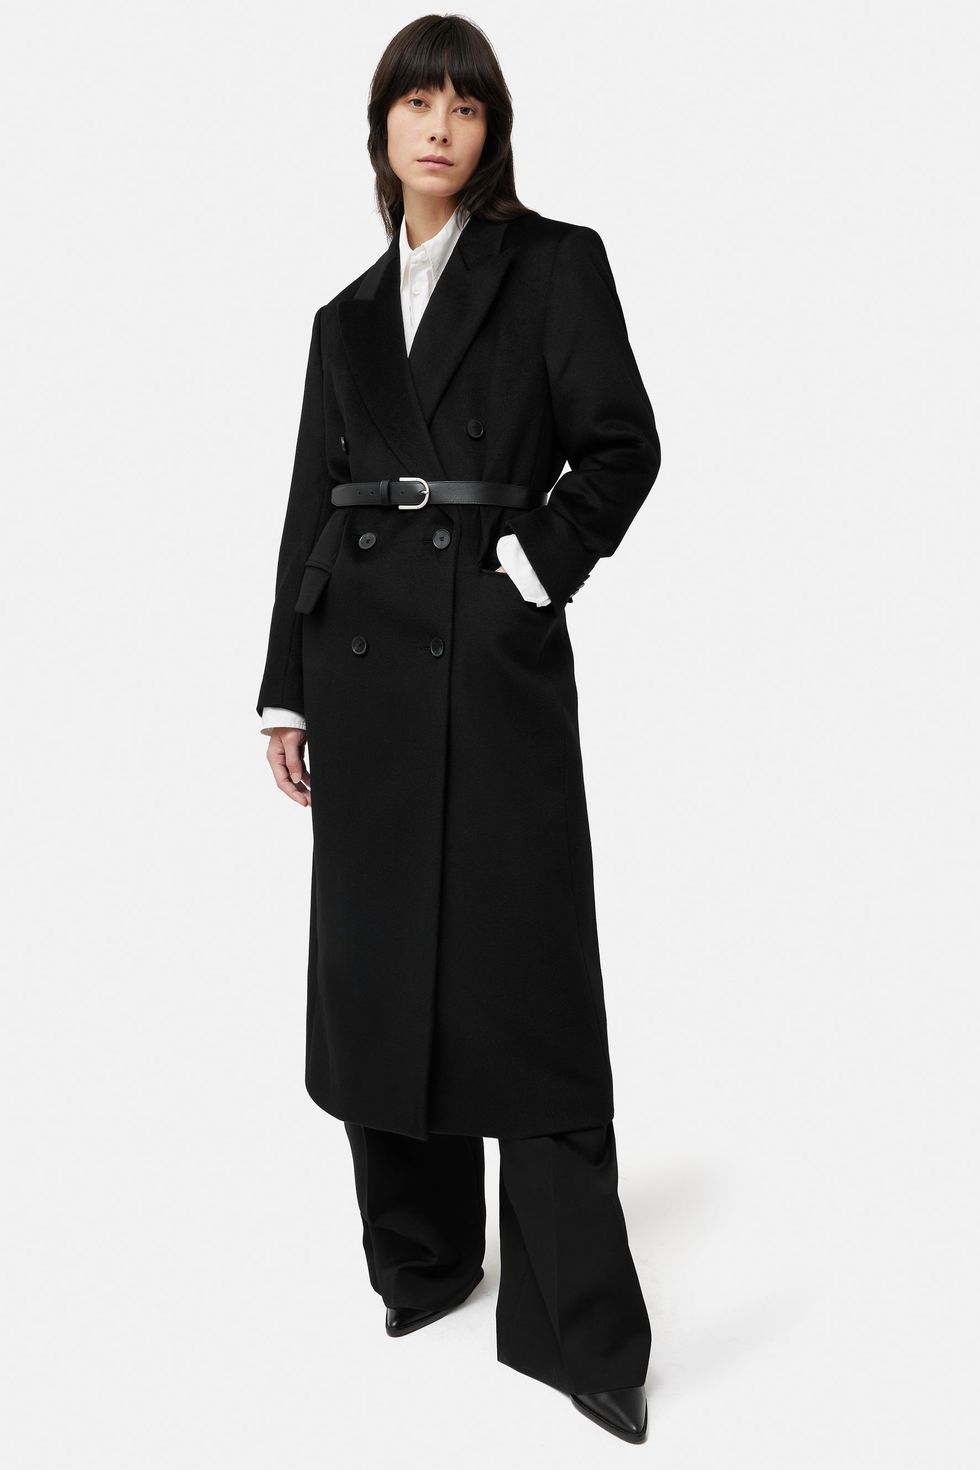 Jigsaw Coats  Long, Wool & Trench Coats for Women